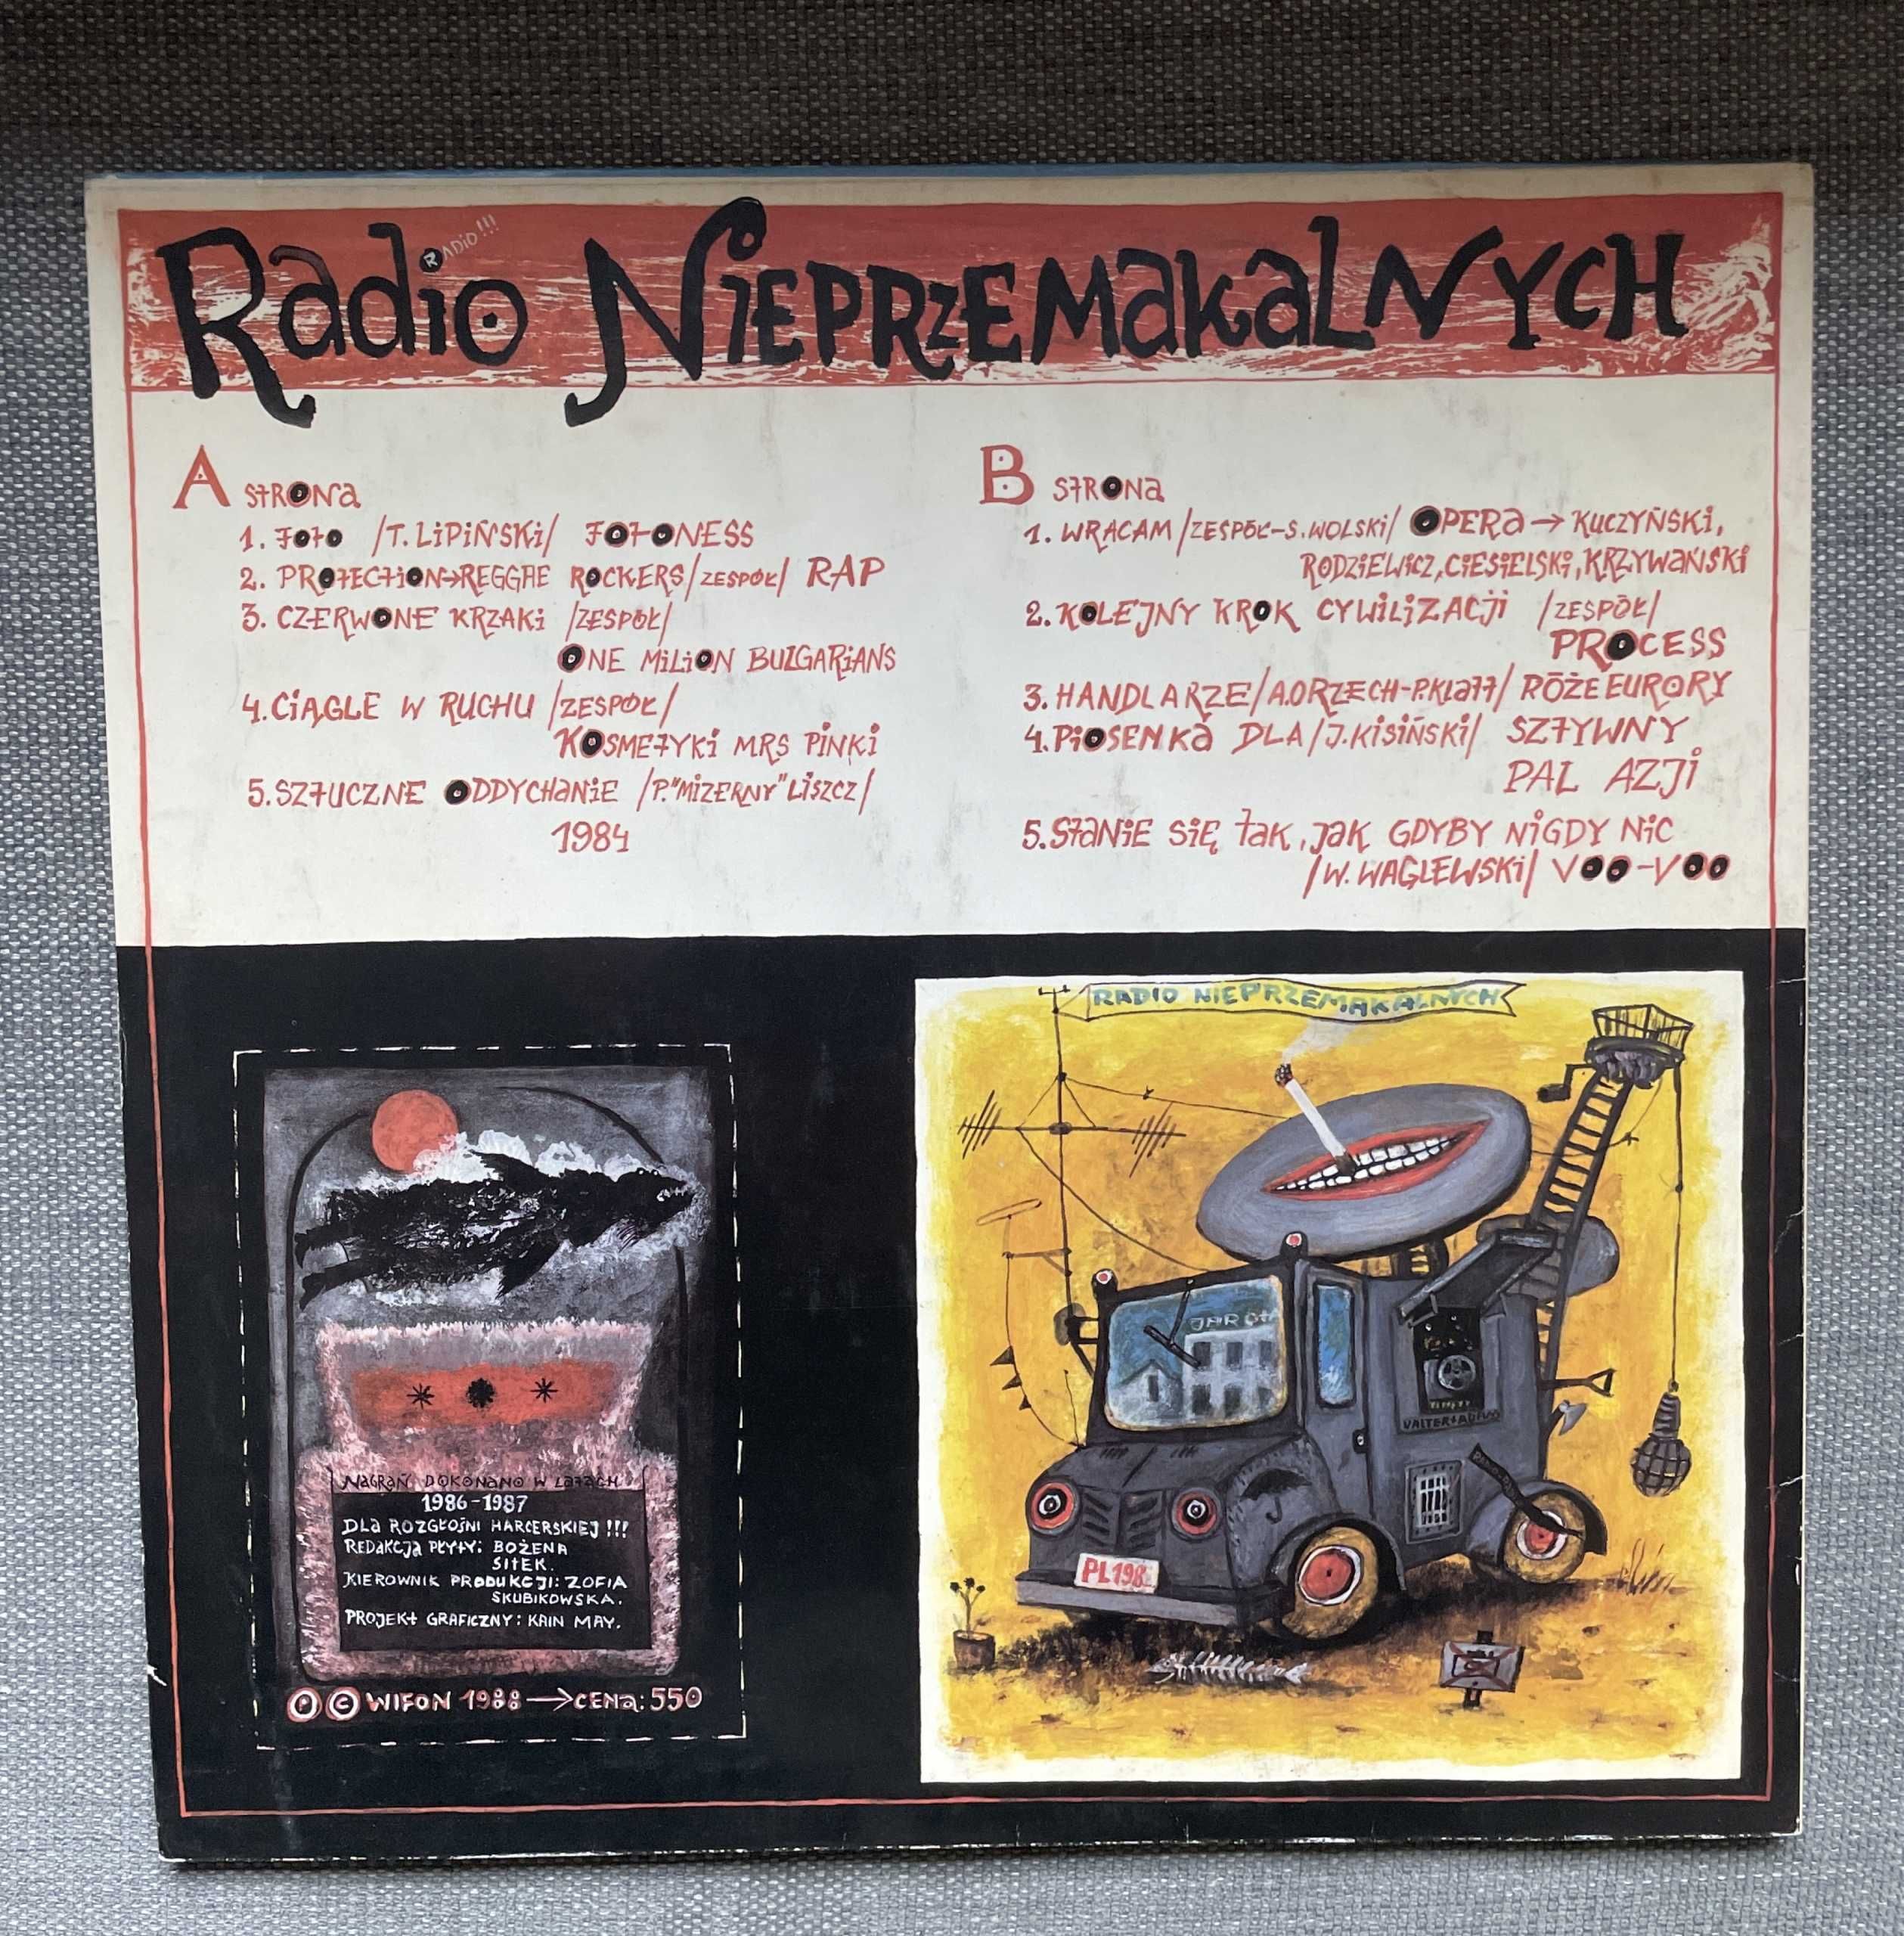 Radio Nieprzemakalnychm 1 wyd. LP 1988